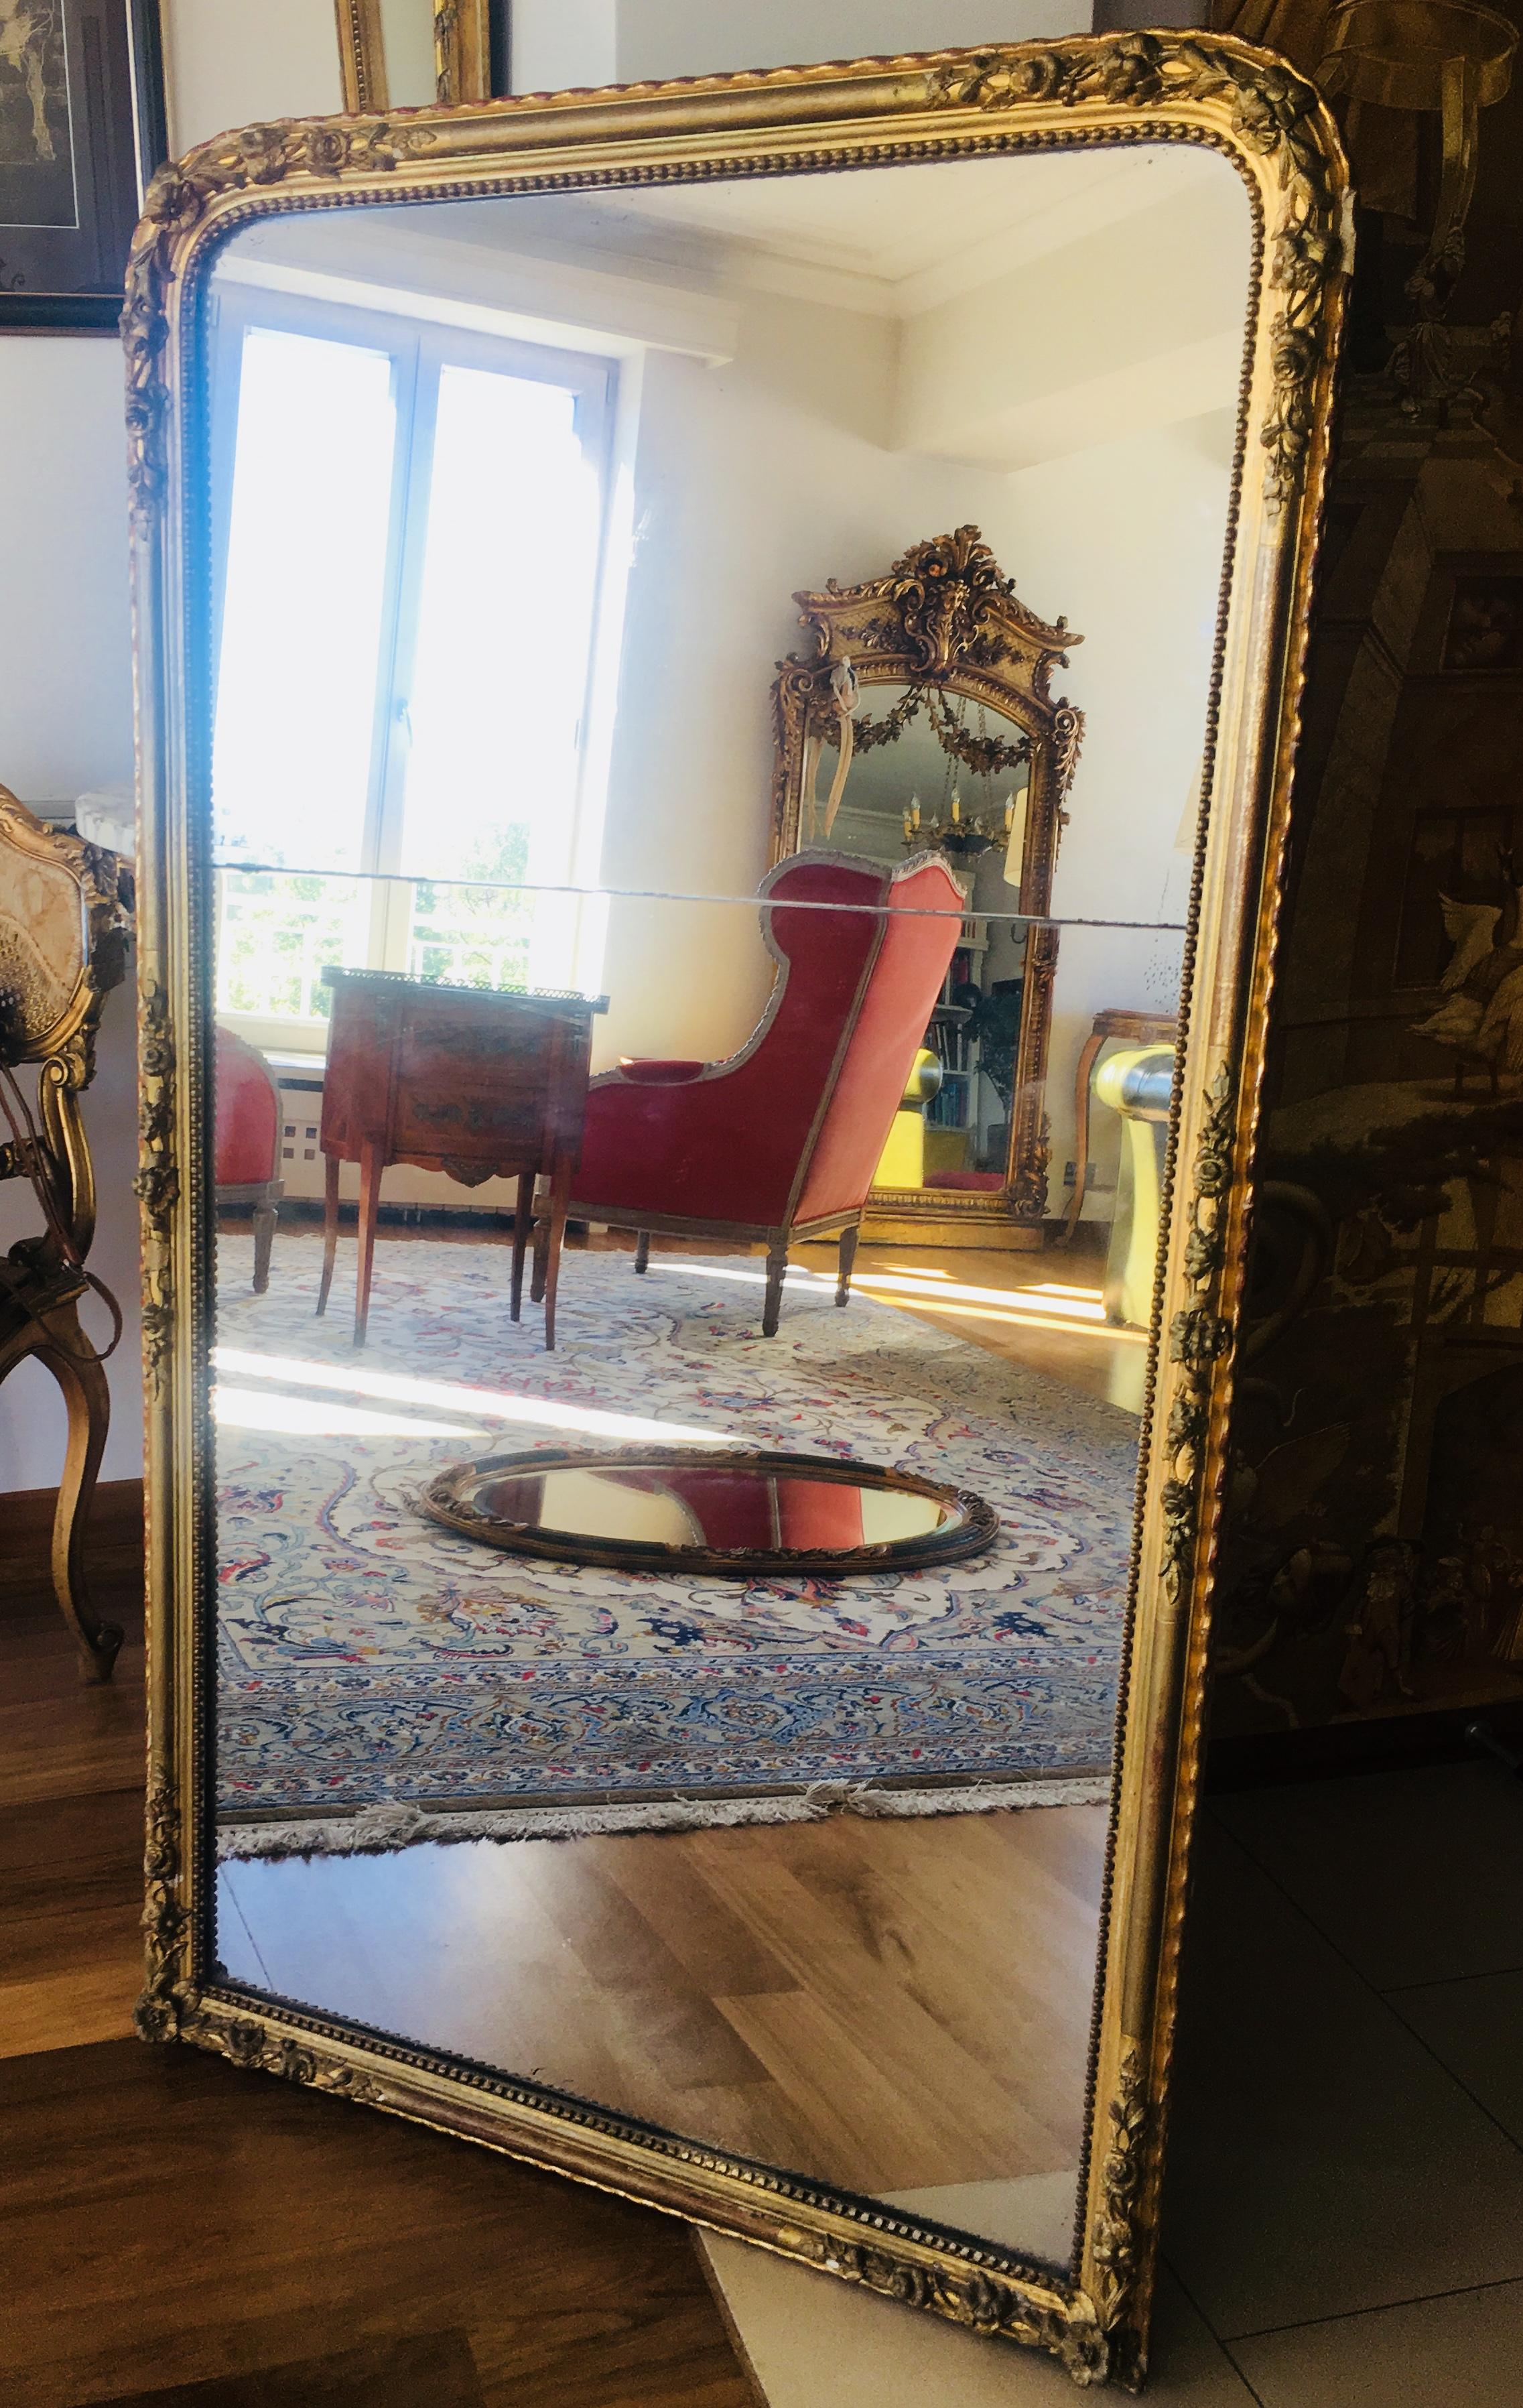 Superbe miroir mural en cristal en bois doré français du 19ème siècle.
Le verre est transparent et le cadre est joliment orné de feuilles et de fleurs.
Dos en chêne très solide.
Offert en très bon état.
France, datant d'environ 1830.